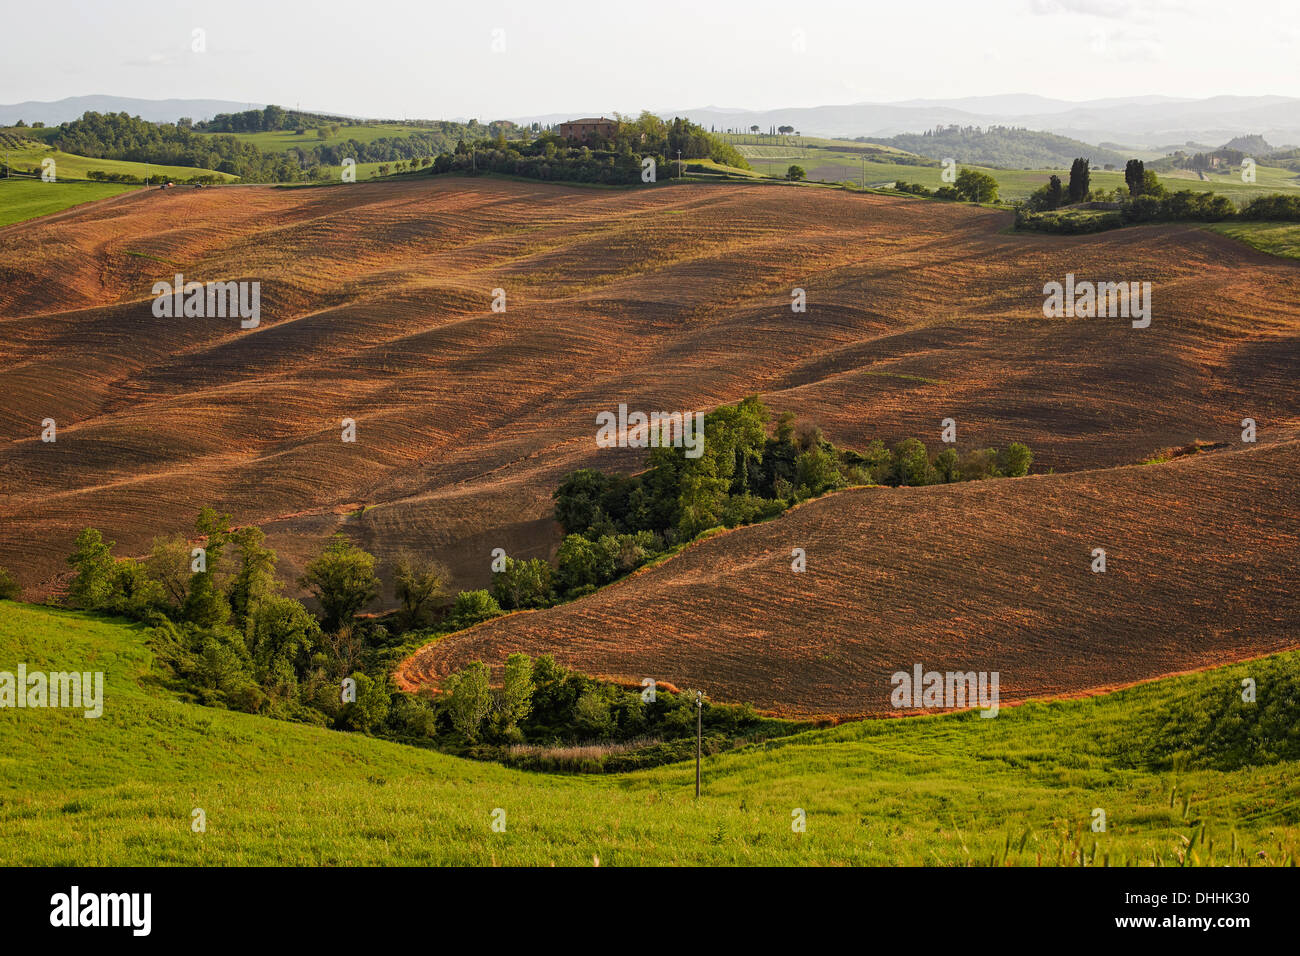 Hilly landscape of the Crete Senesi region, Pievina, Asciano, Province of Siena, Tuscany, Italy Stock Photo